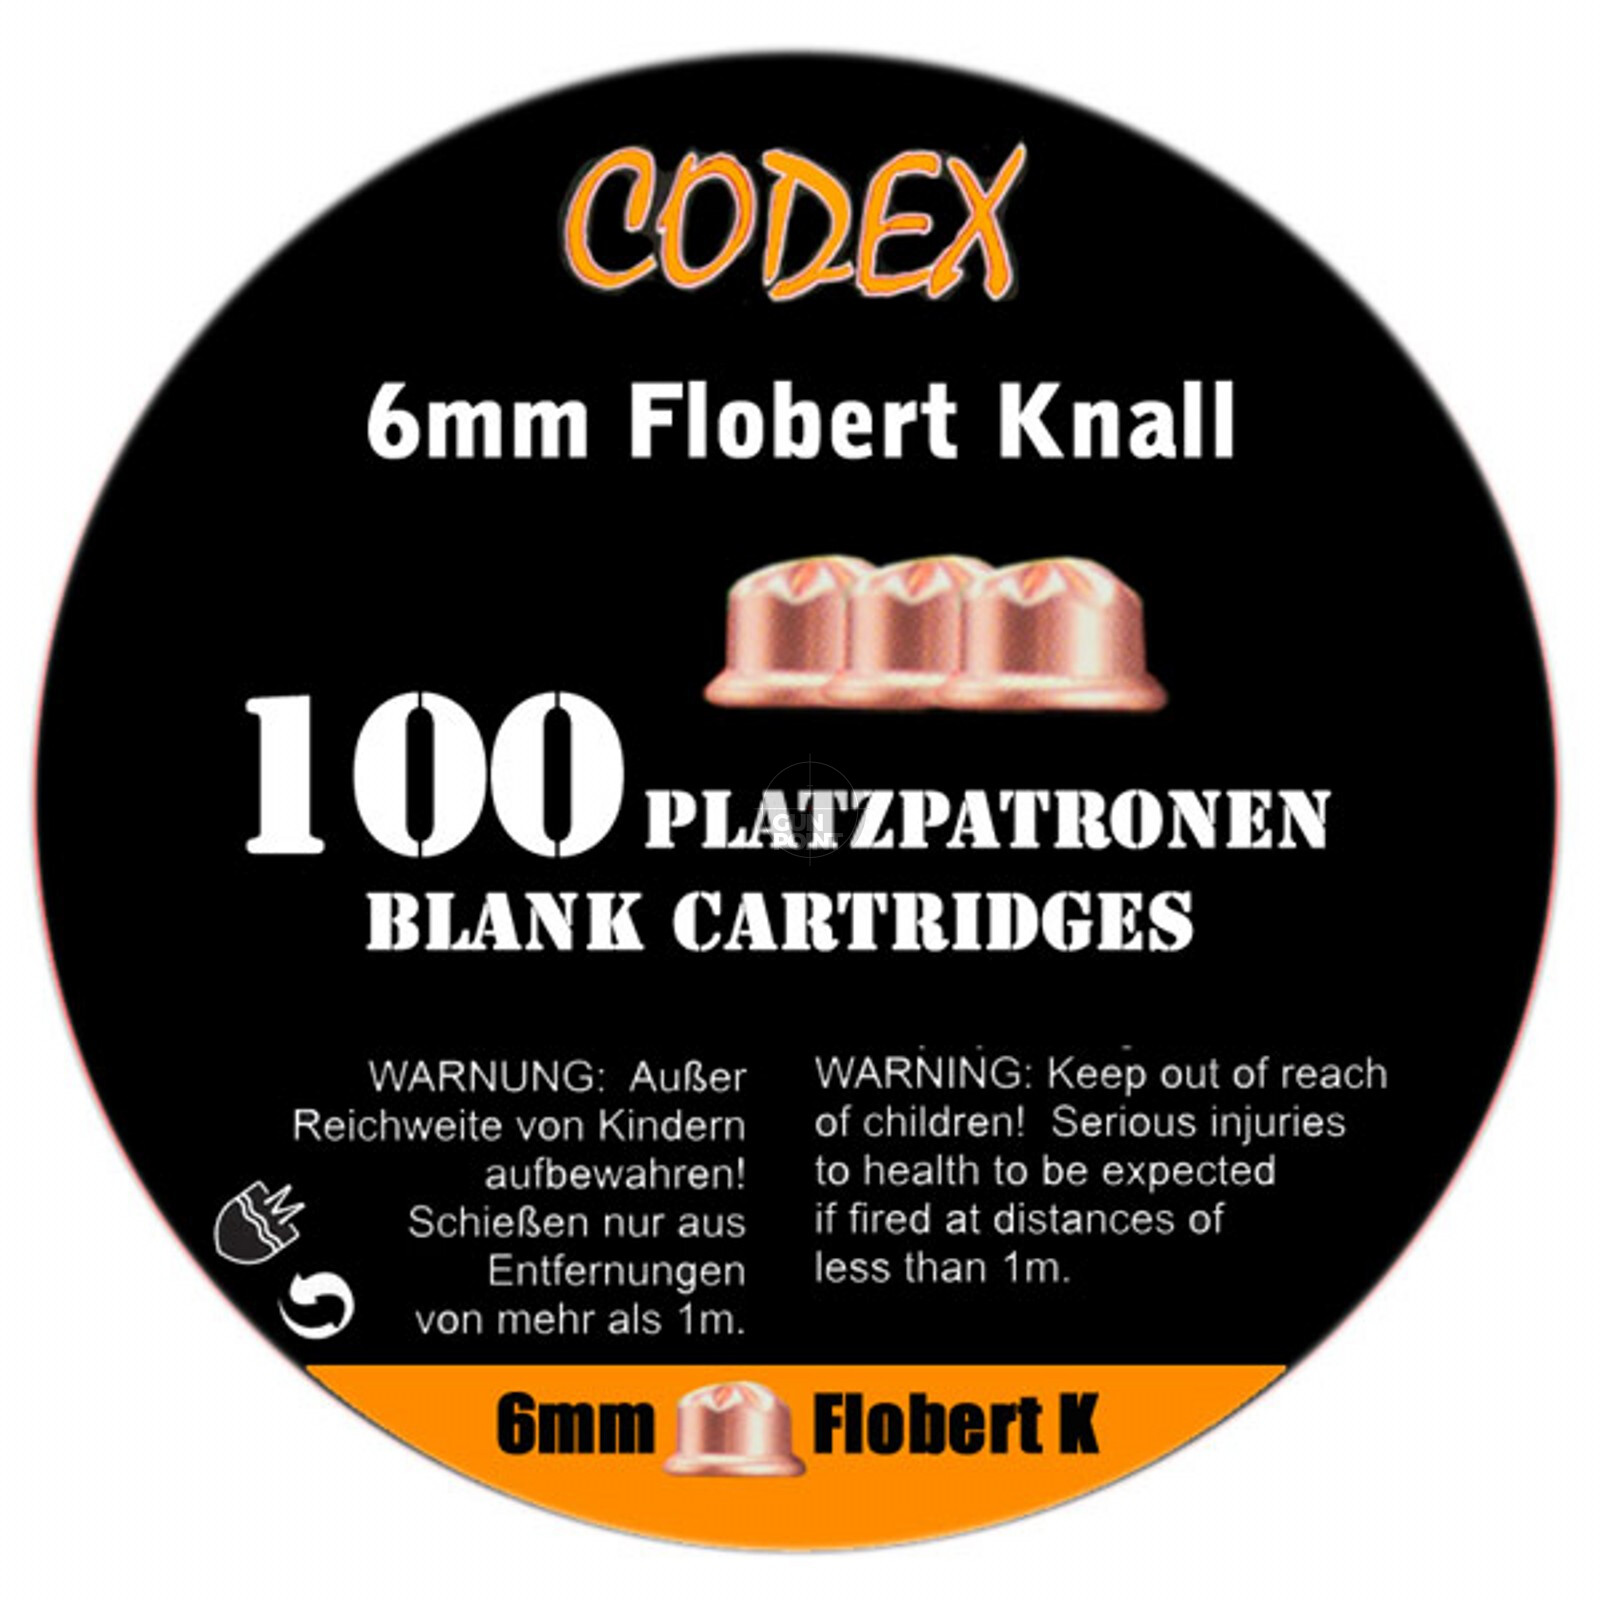 CODEX Platzpatronen - 6 mm Flobert Knall - 100 Stück